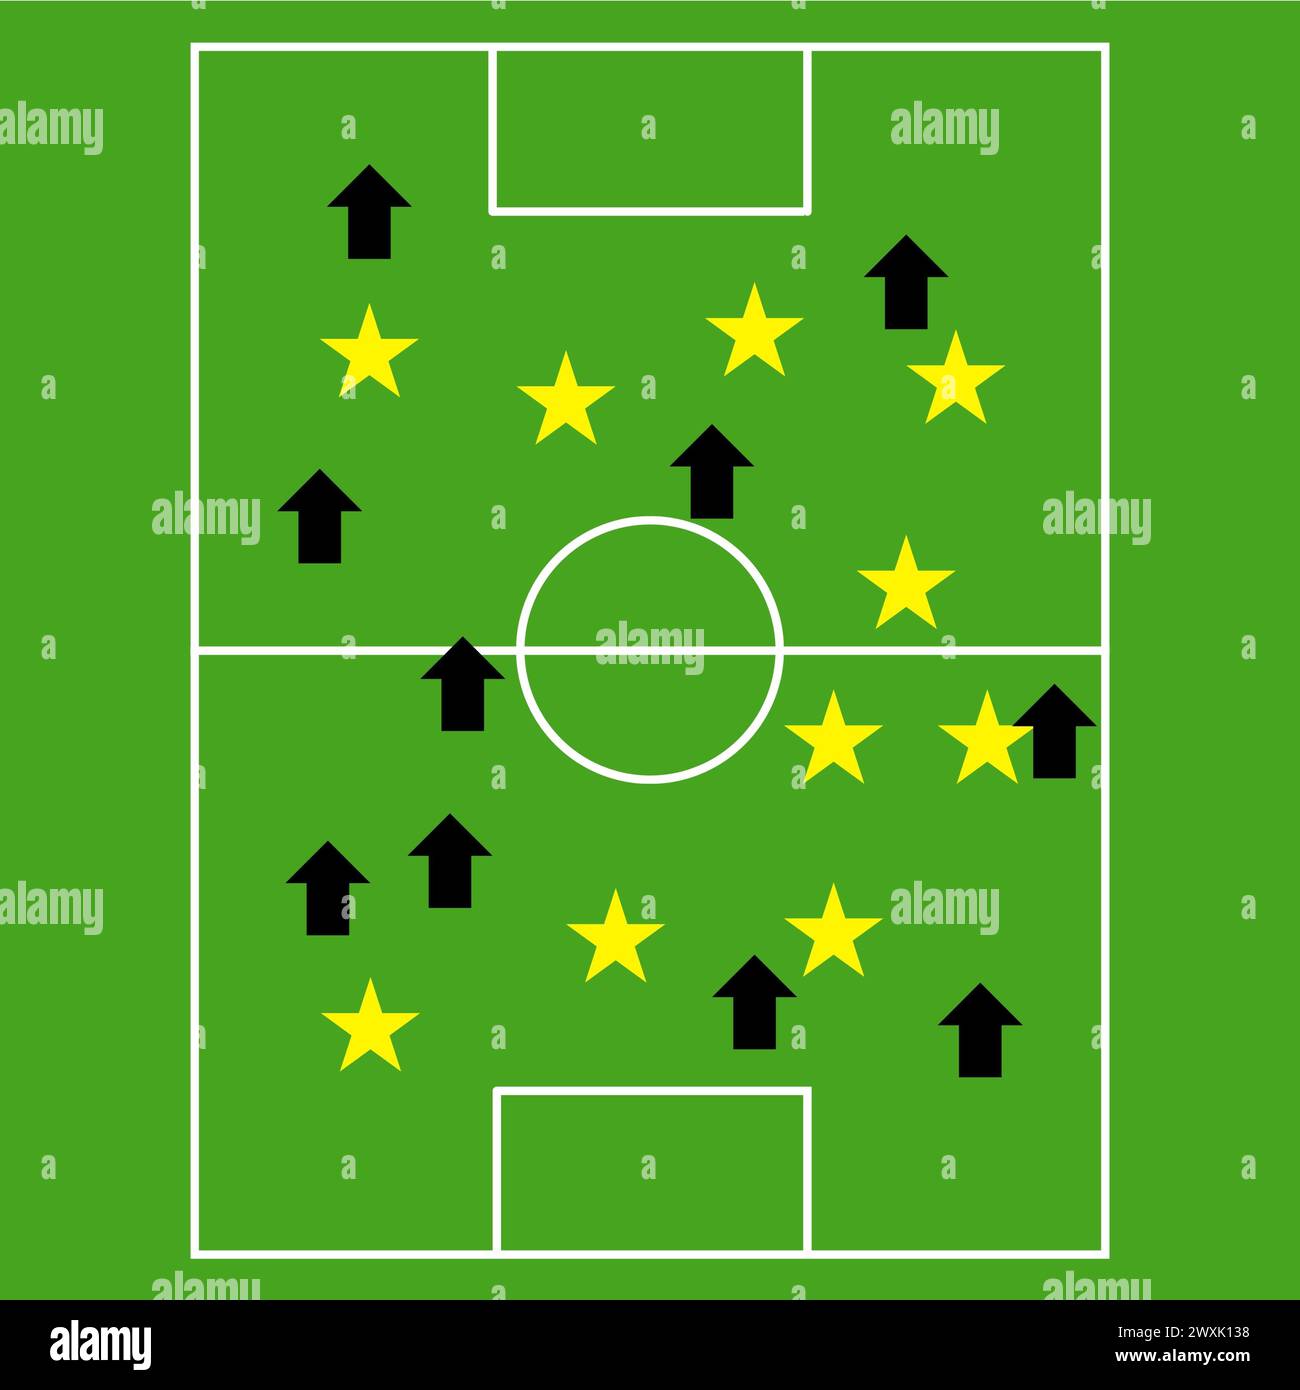 Fußball-Taktik-Brett mit Pfeilen und Sternen gezeichnet, Fußball/Fußball-Strategie-Plan-Brett-Vektor in grüner Farbe Stock Vektor